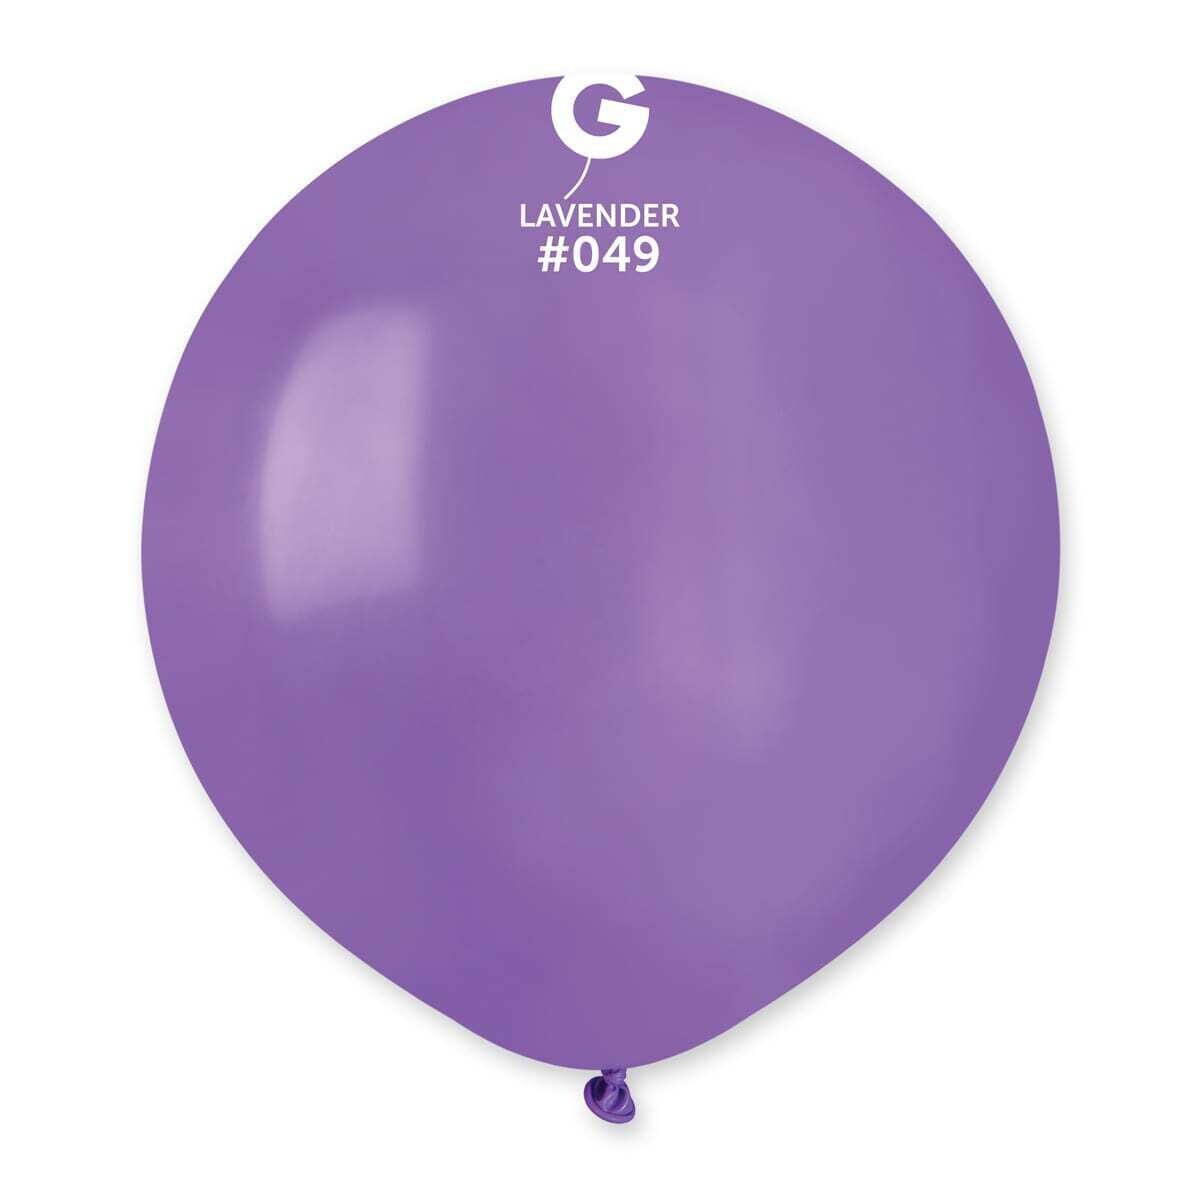 G150: #049 Lavender 154955 Standard Color 19 in